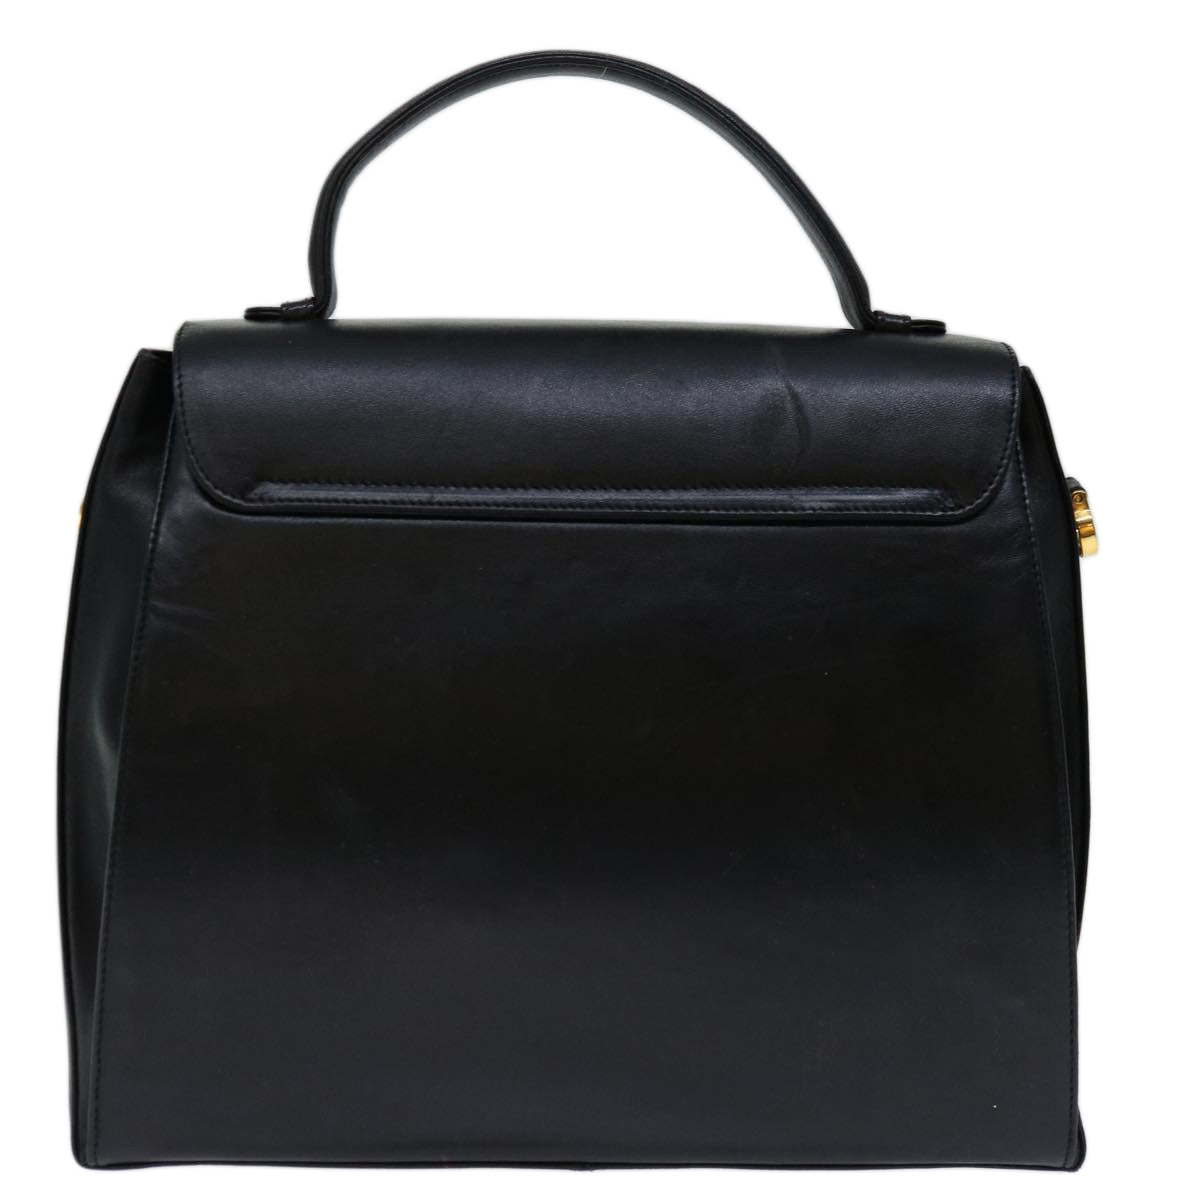 Salvatore Ferragamo Hand Bag Leather Black Auth hk1172 - 0